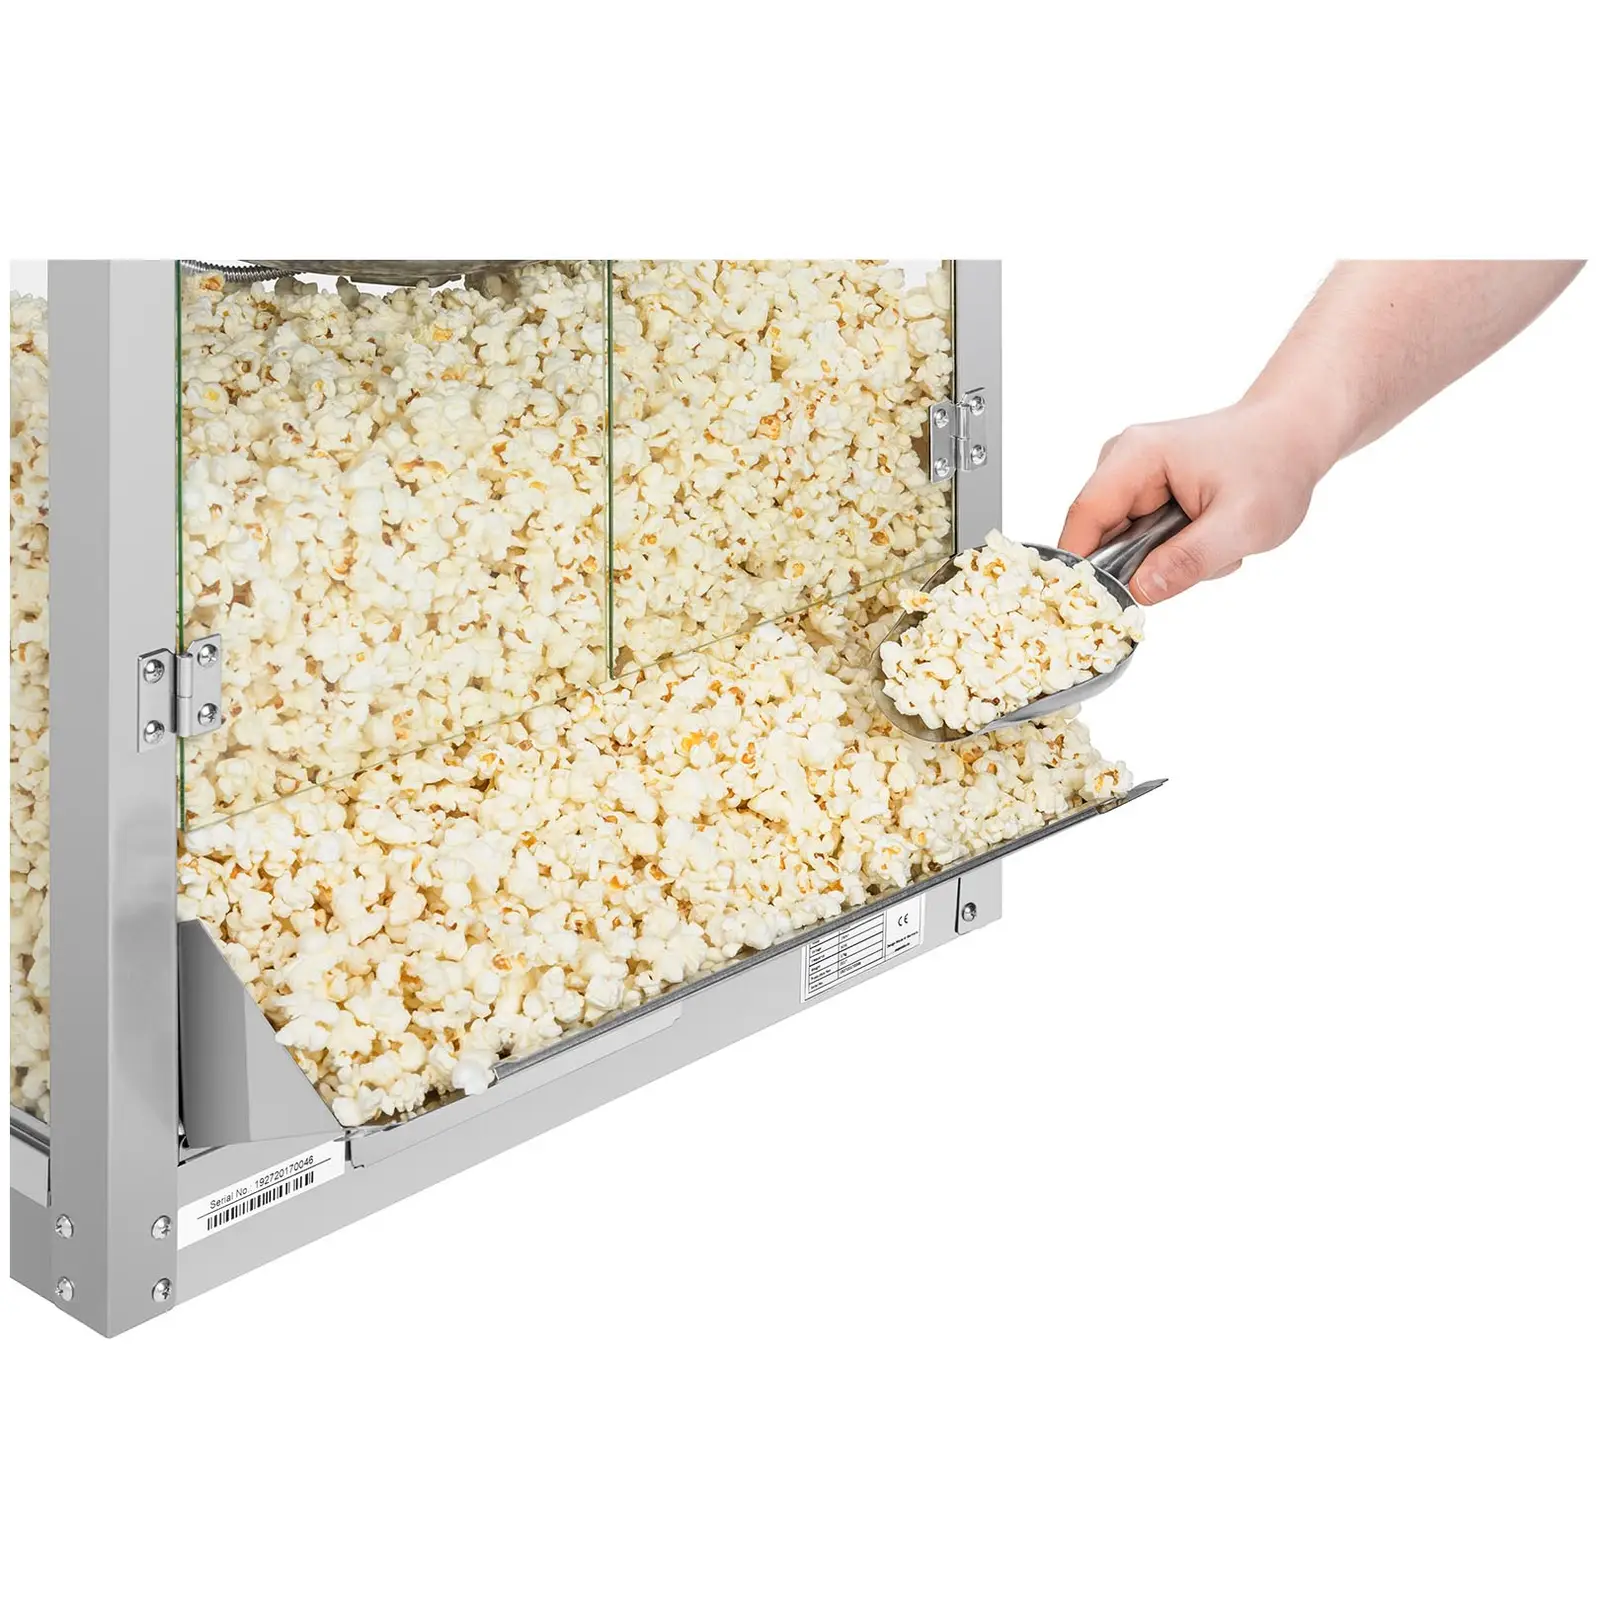 Maszyna do popcornu z trwałą konstrukcją ze stali nierdzewnej 